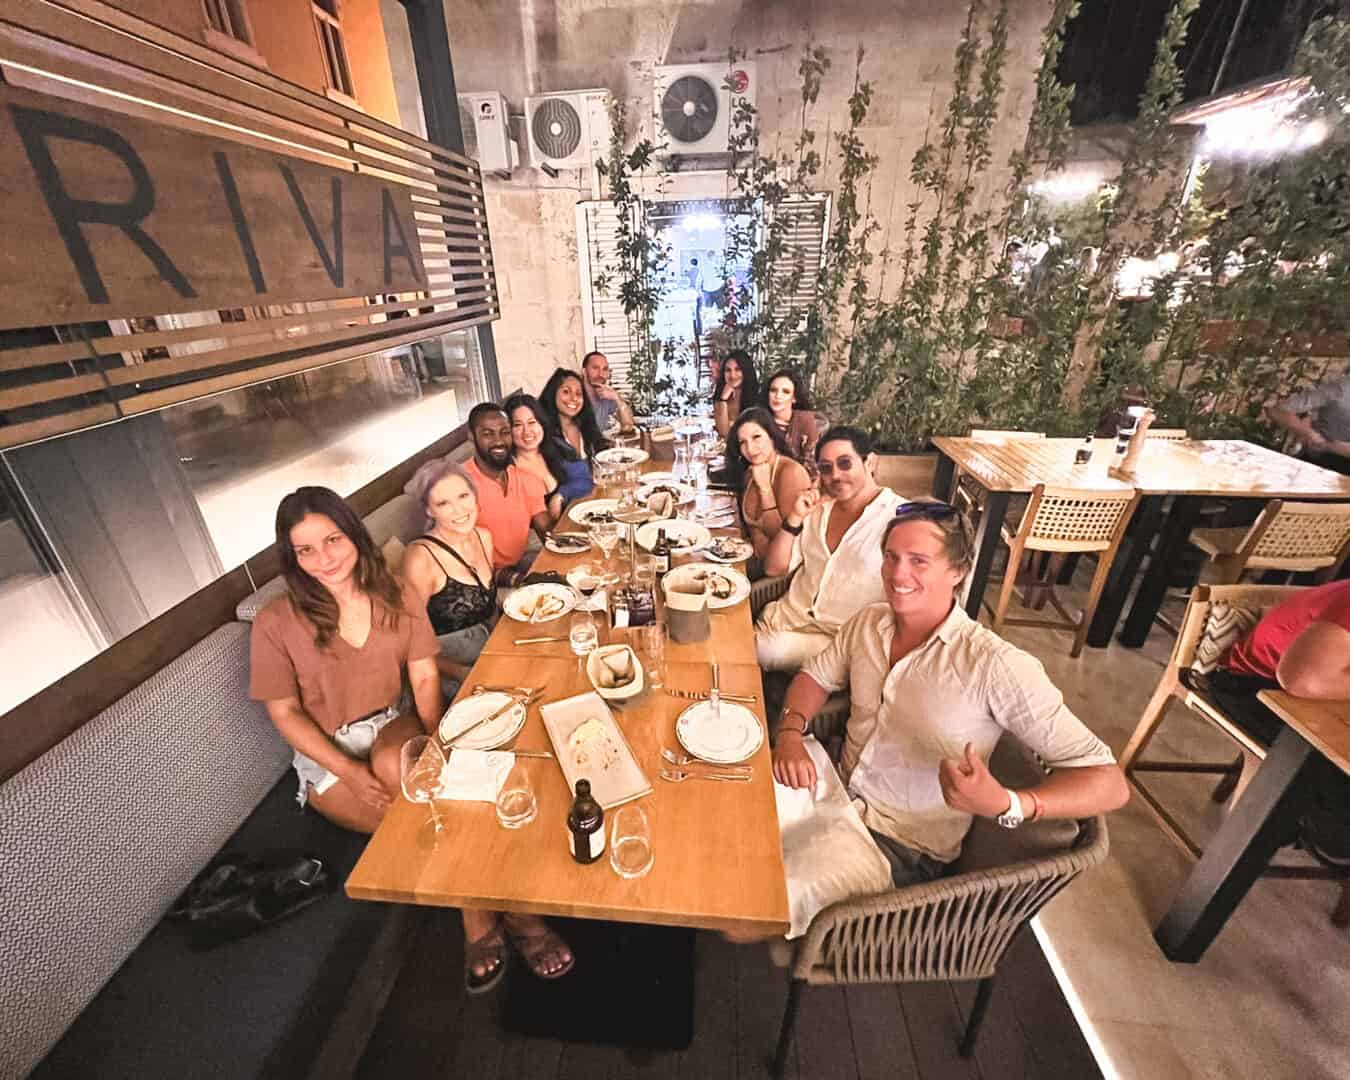 Group at Taverna Riva eating dinner